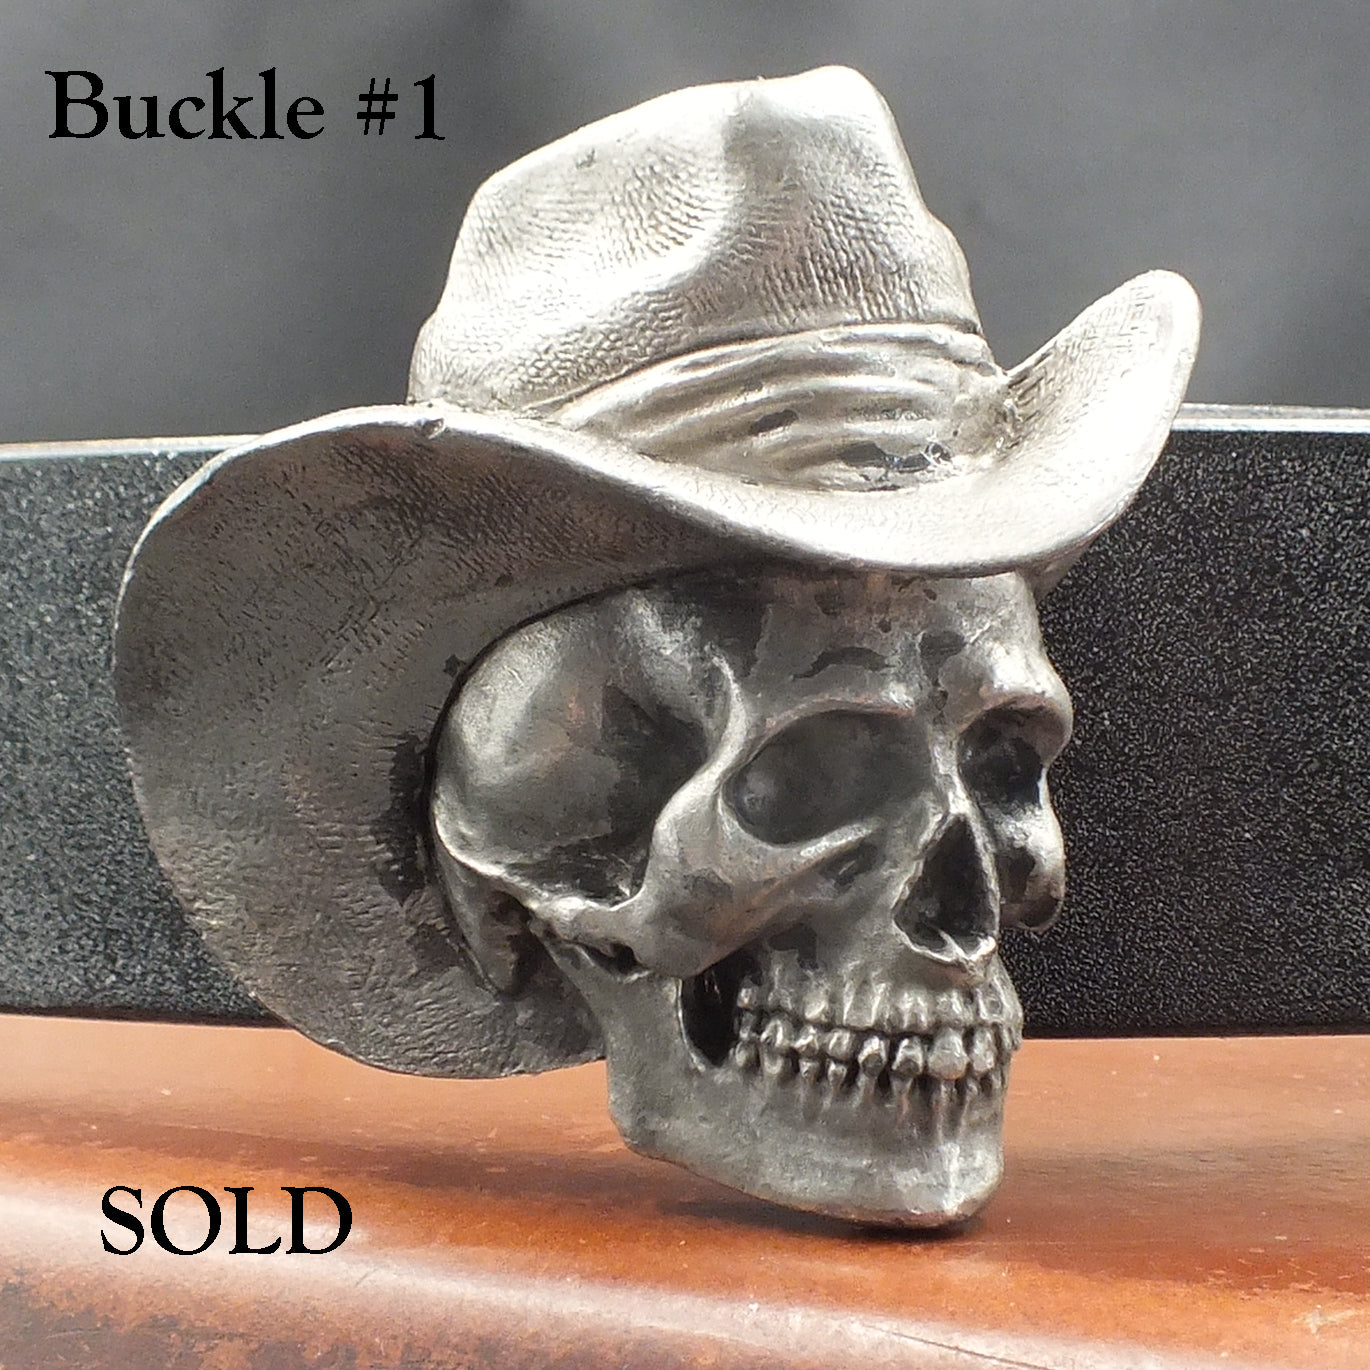 oak-bark-tanned-leather-belt-skull-buckle-40mm-handmade